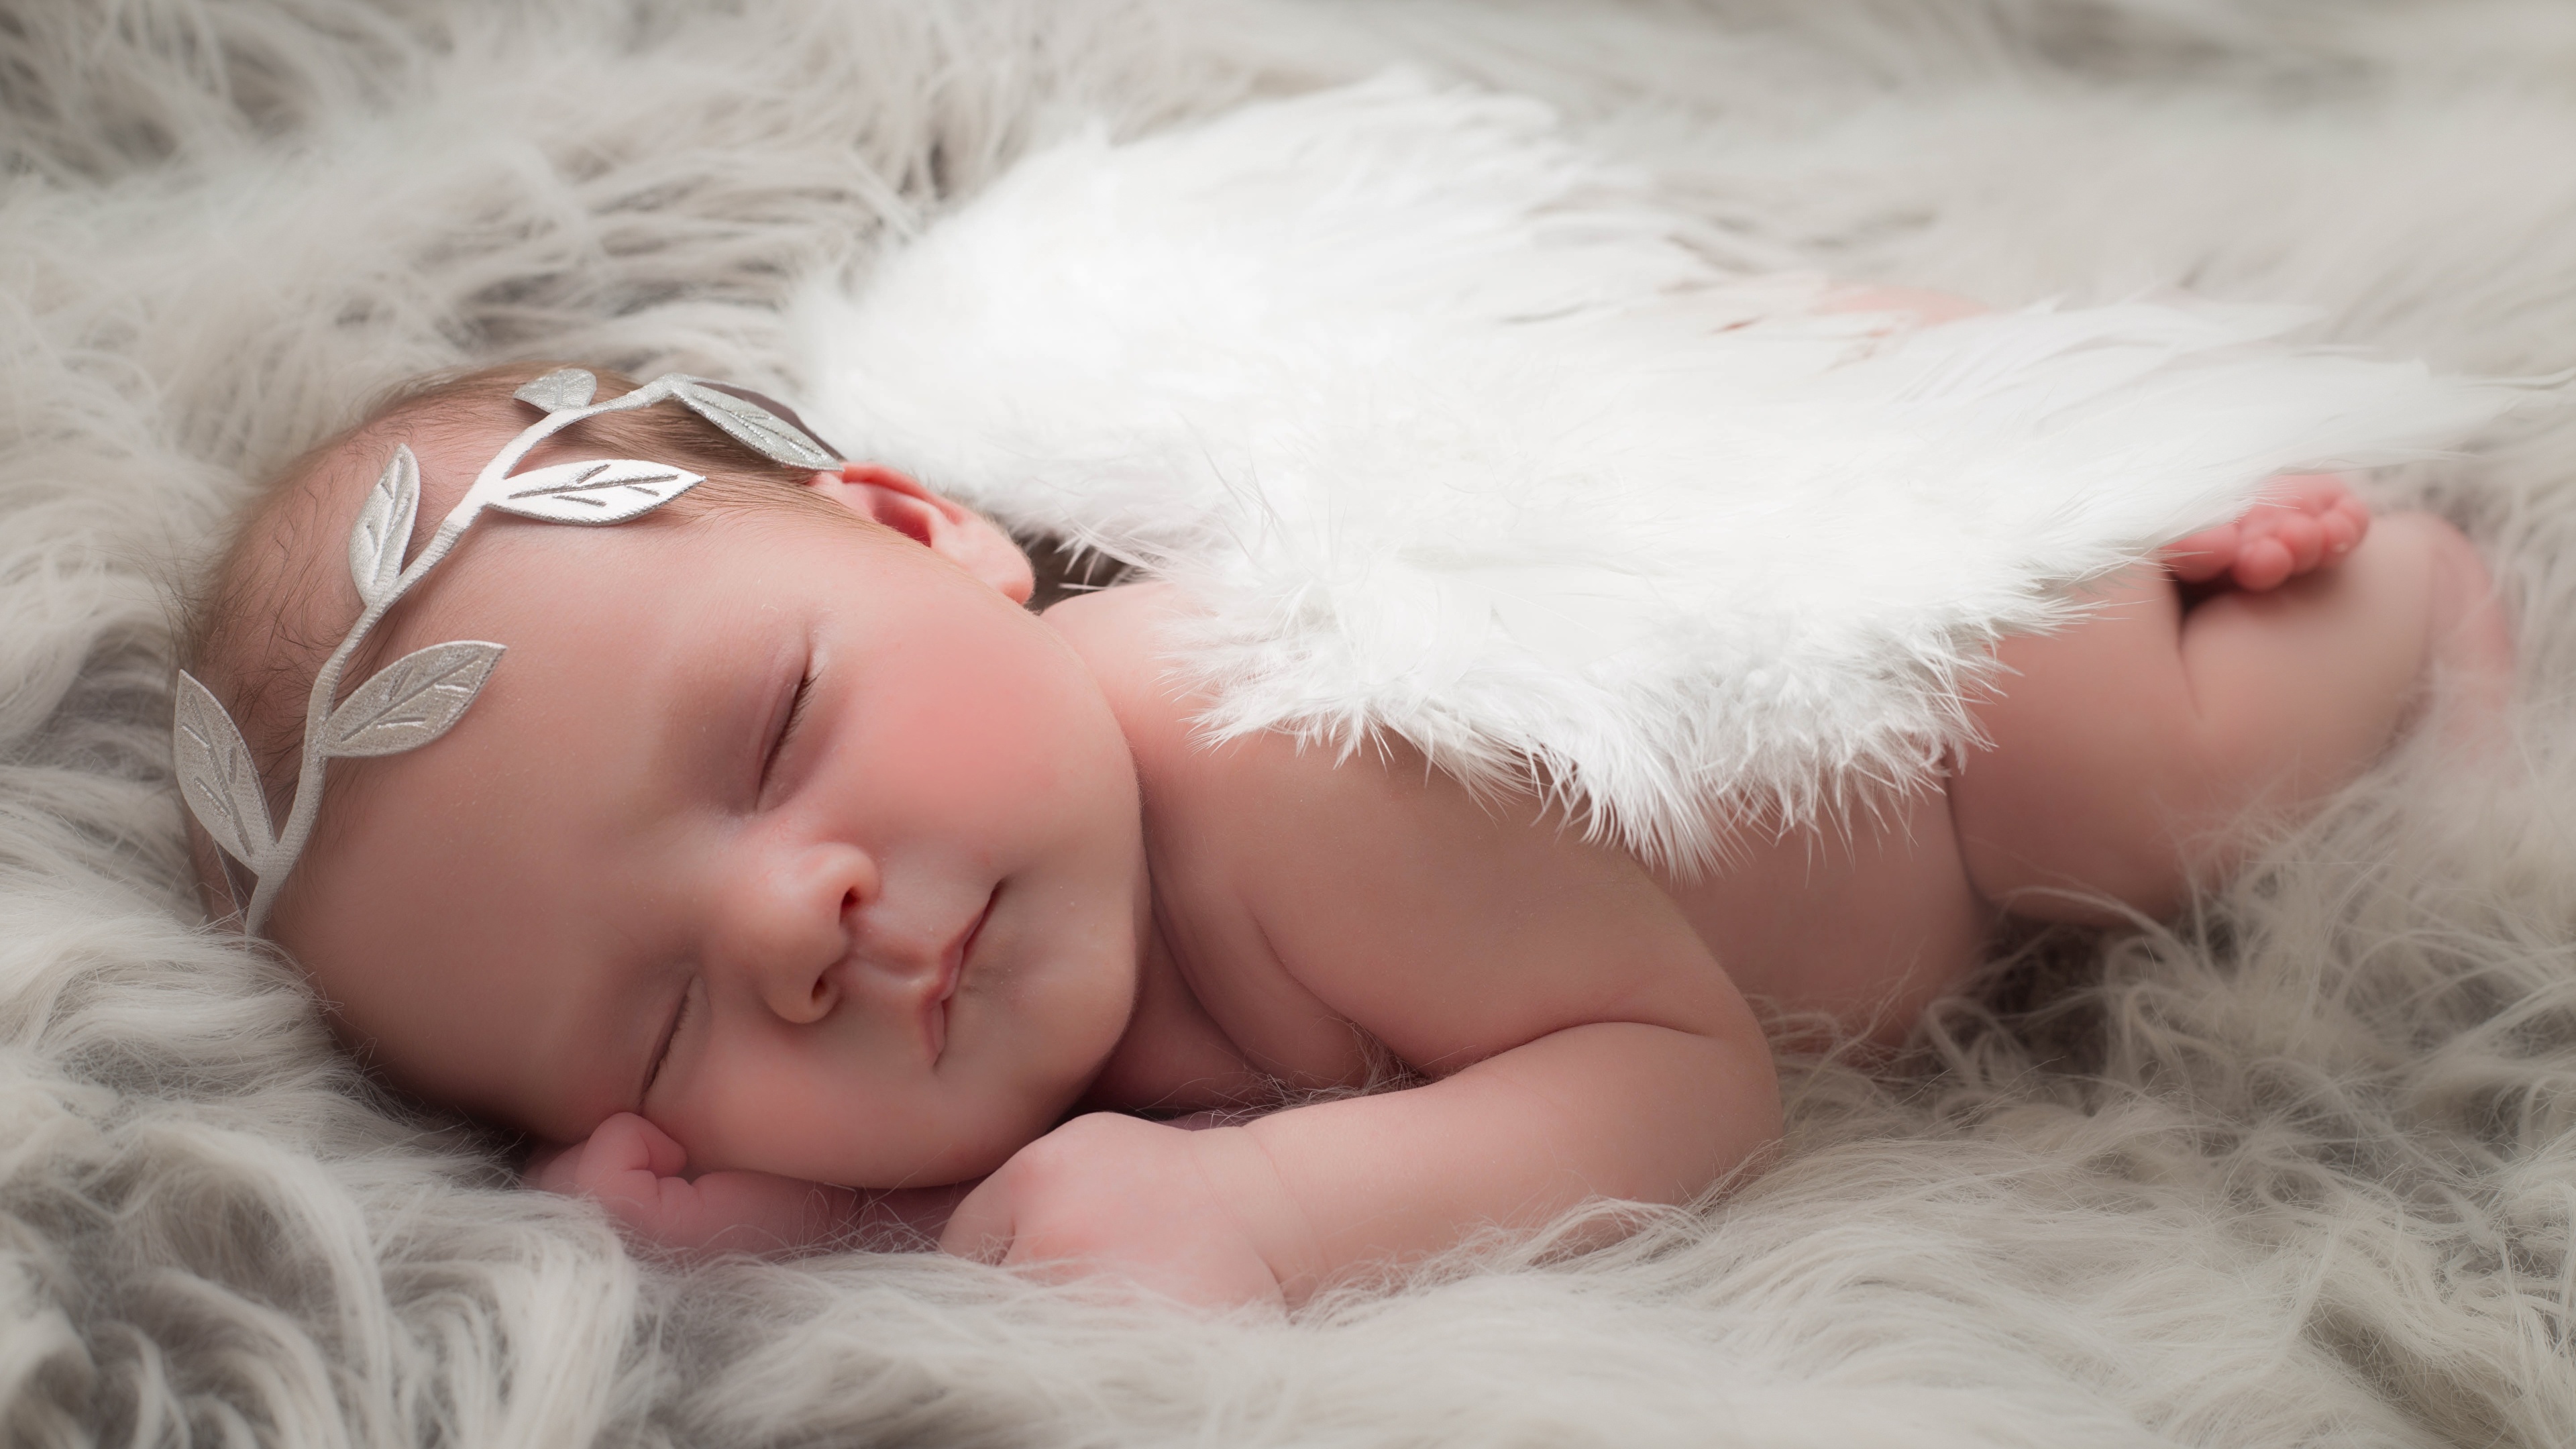 壁紙 3840x2160 天使 赤ちゃん 眠る 子供 ダウンロード 写真